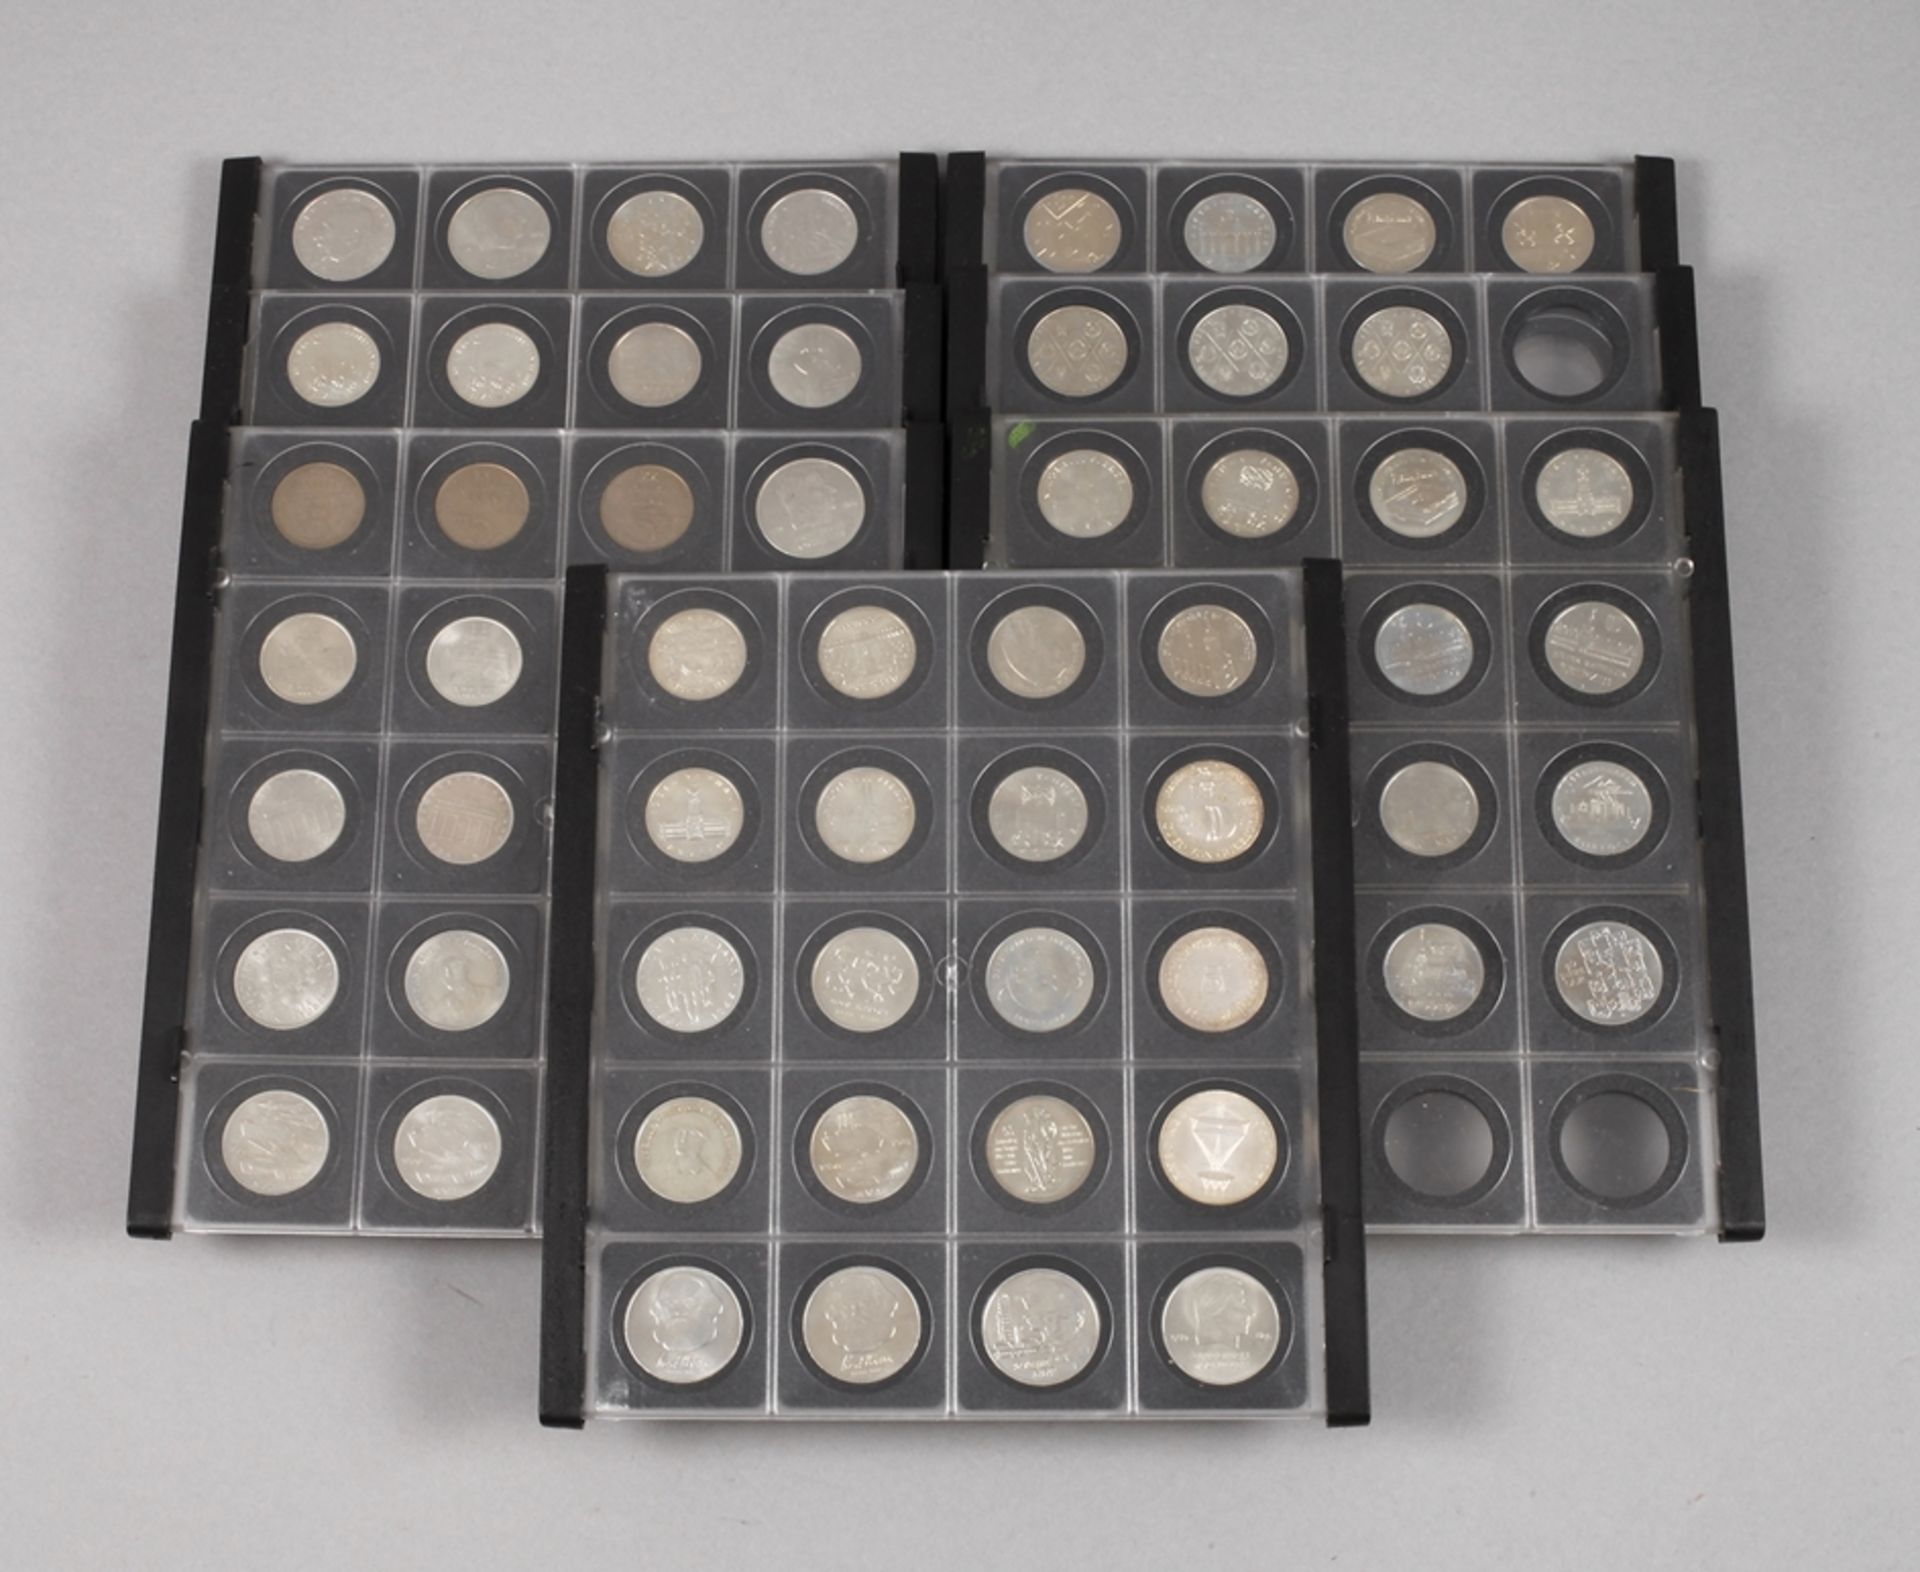 Sammlung DDR-Gedenkmünzen119 Stück in 7 Tafeln, darunter 10 Mark Otto von Guericke 1977, Albrecht